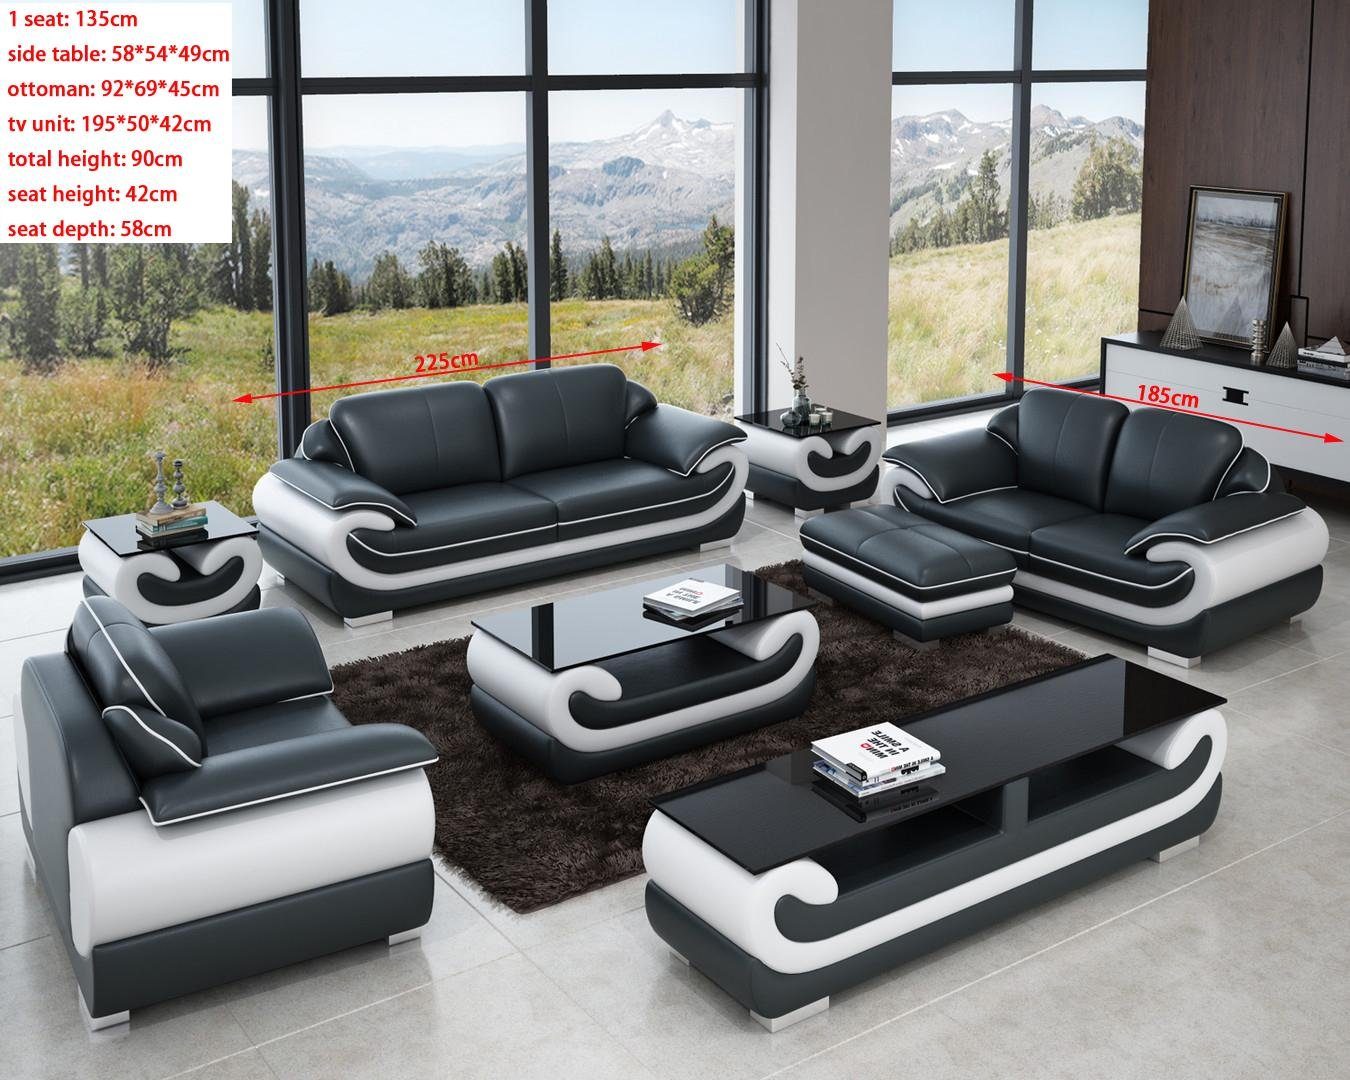 JVmoebel Sofa Sofas 3+2+1 Design Made Set Polster in Europe Sofas Couchen Sitzer Grau/Weiß Leder Relax